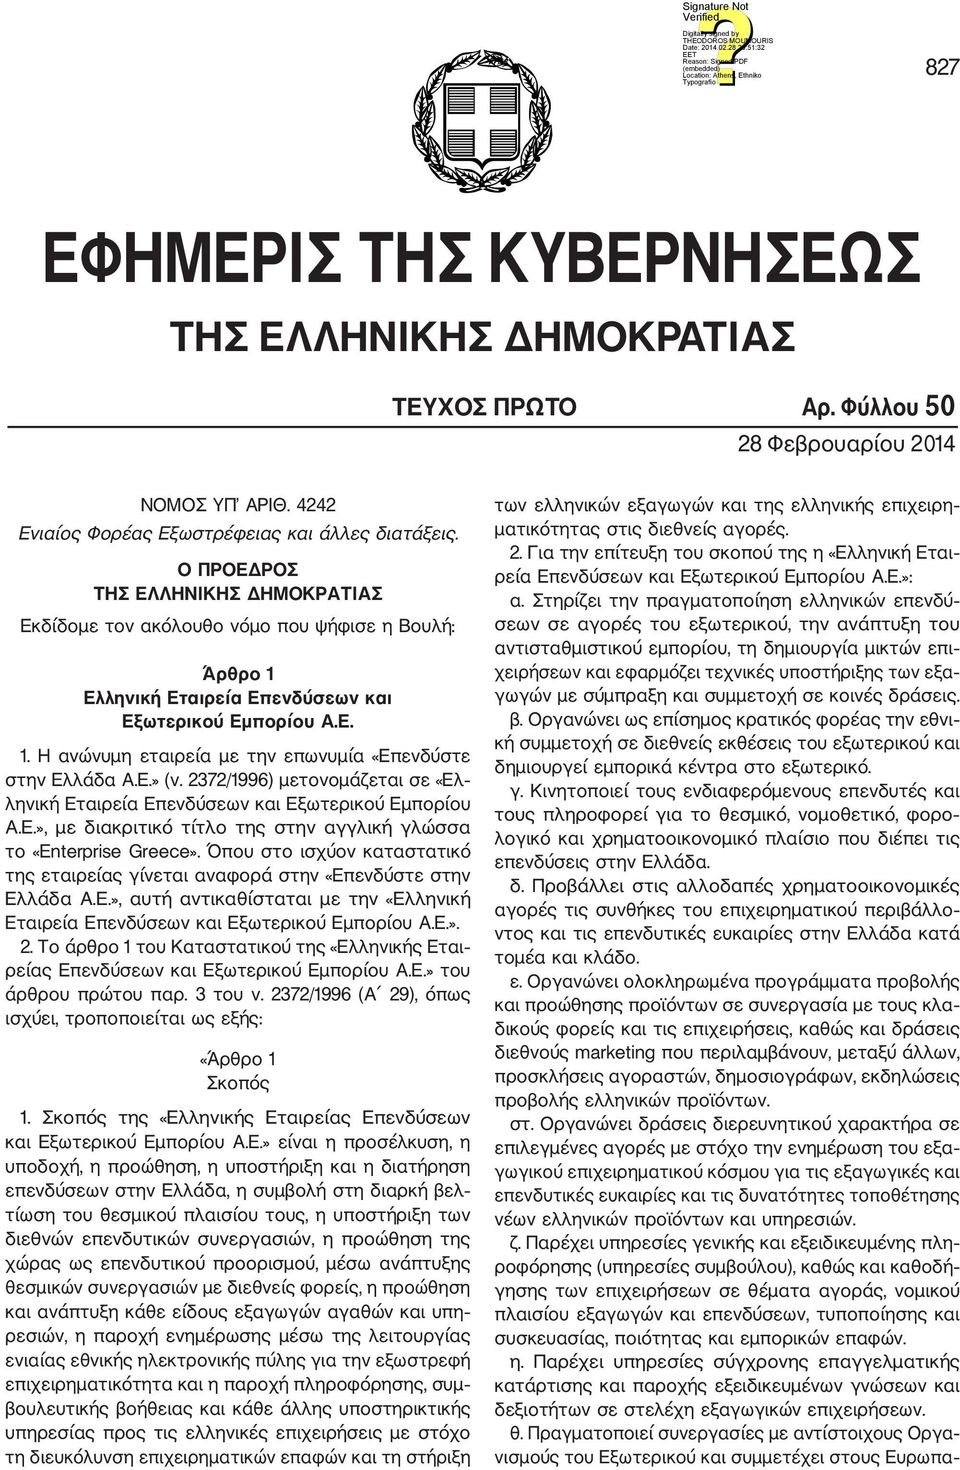 Ε.» (ν. 2372/1996) μετονομάζεται σε «Ελ ληνική Εταιρεία Επενδύσεων και Εξωτερικού Εμπορίου Α.Ε.», με διακριτικό τίτλο της στην αγγλική γλώσσα το «Enterprise Greece».